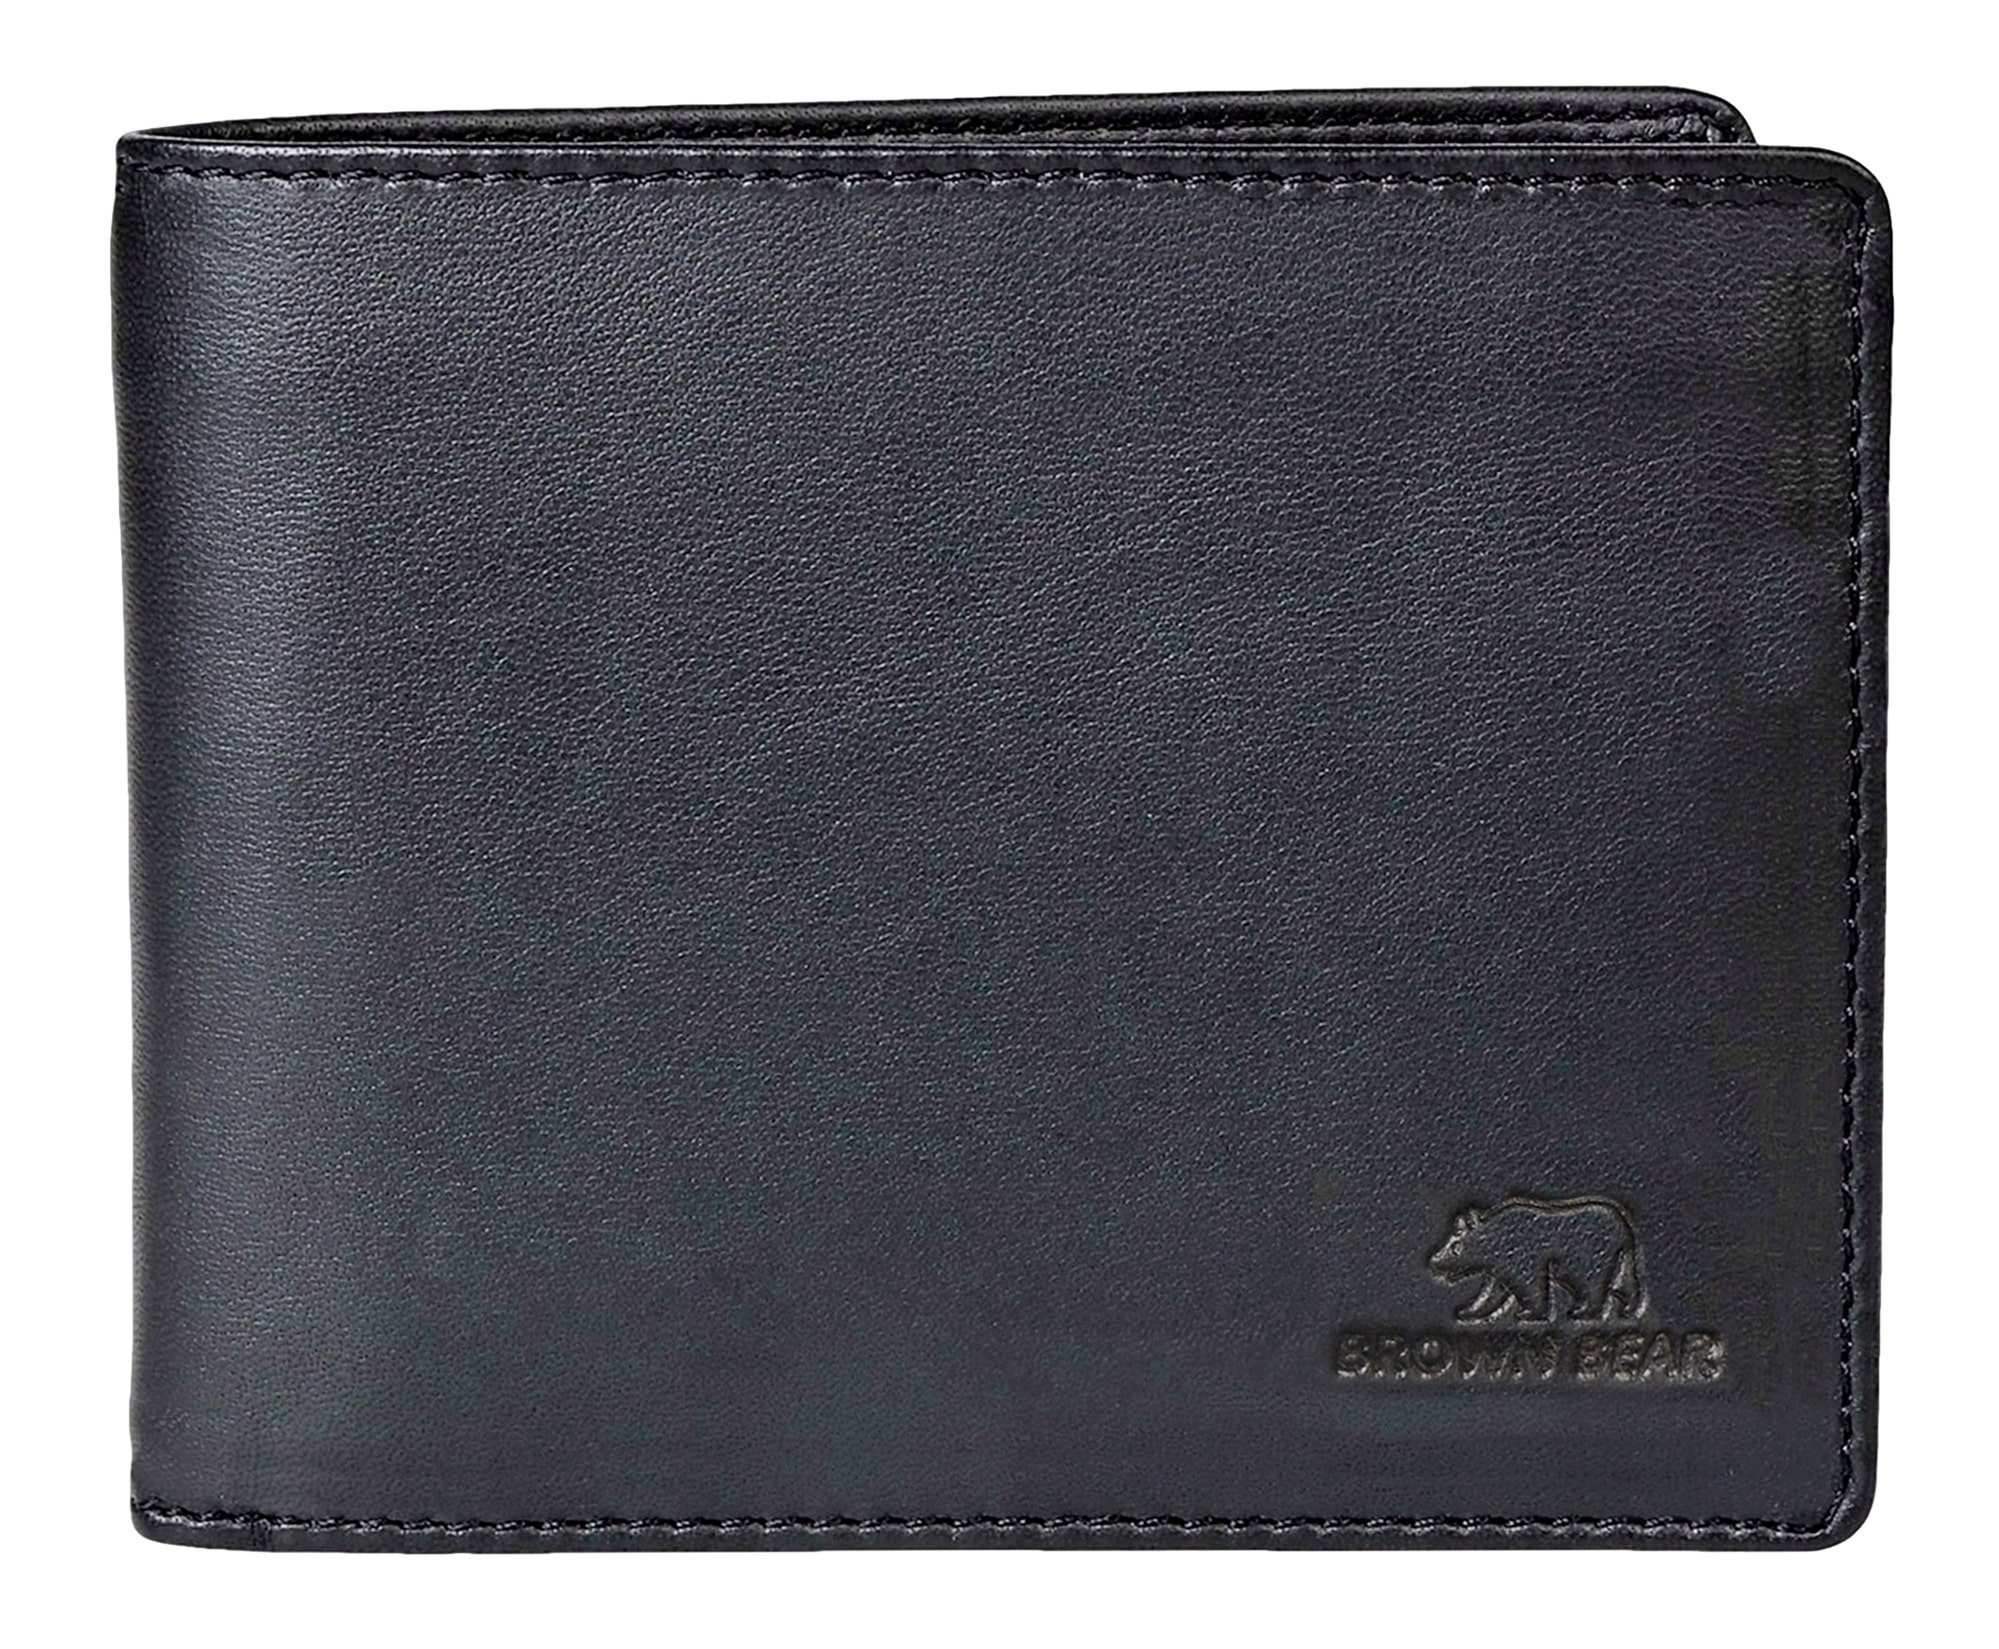 Brown Bear Geldbörse Modell 103 Herren Portemonnaie mit Netzfach, aus Echtleder mit 9 Kartenfächern Farbe Schwarz Schwarz Nappa